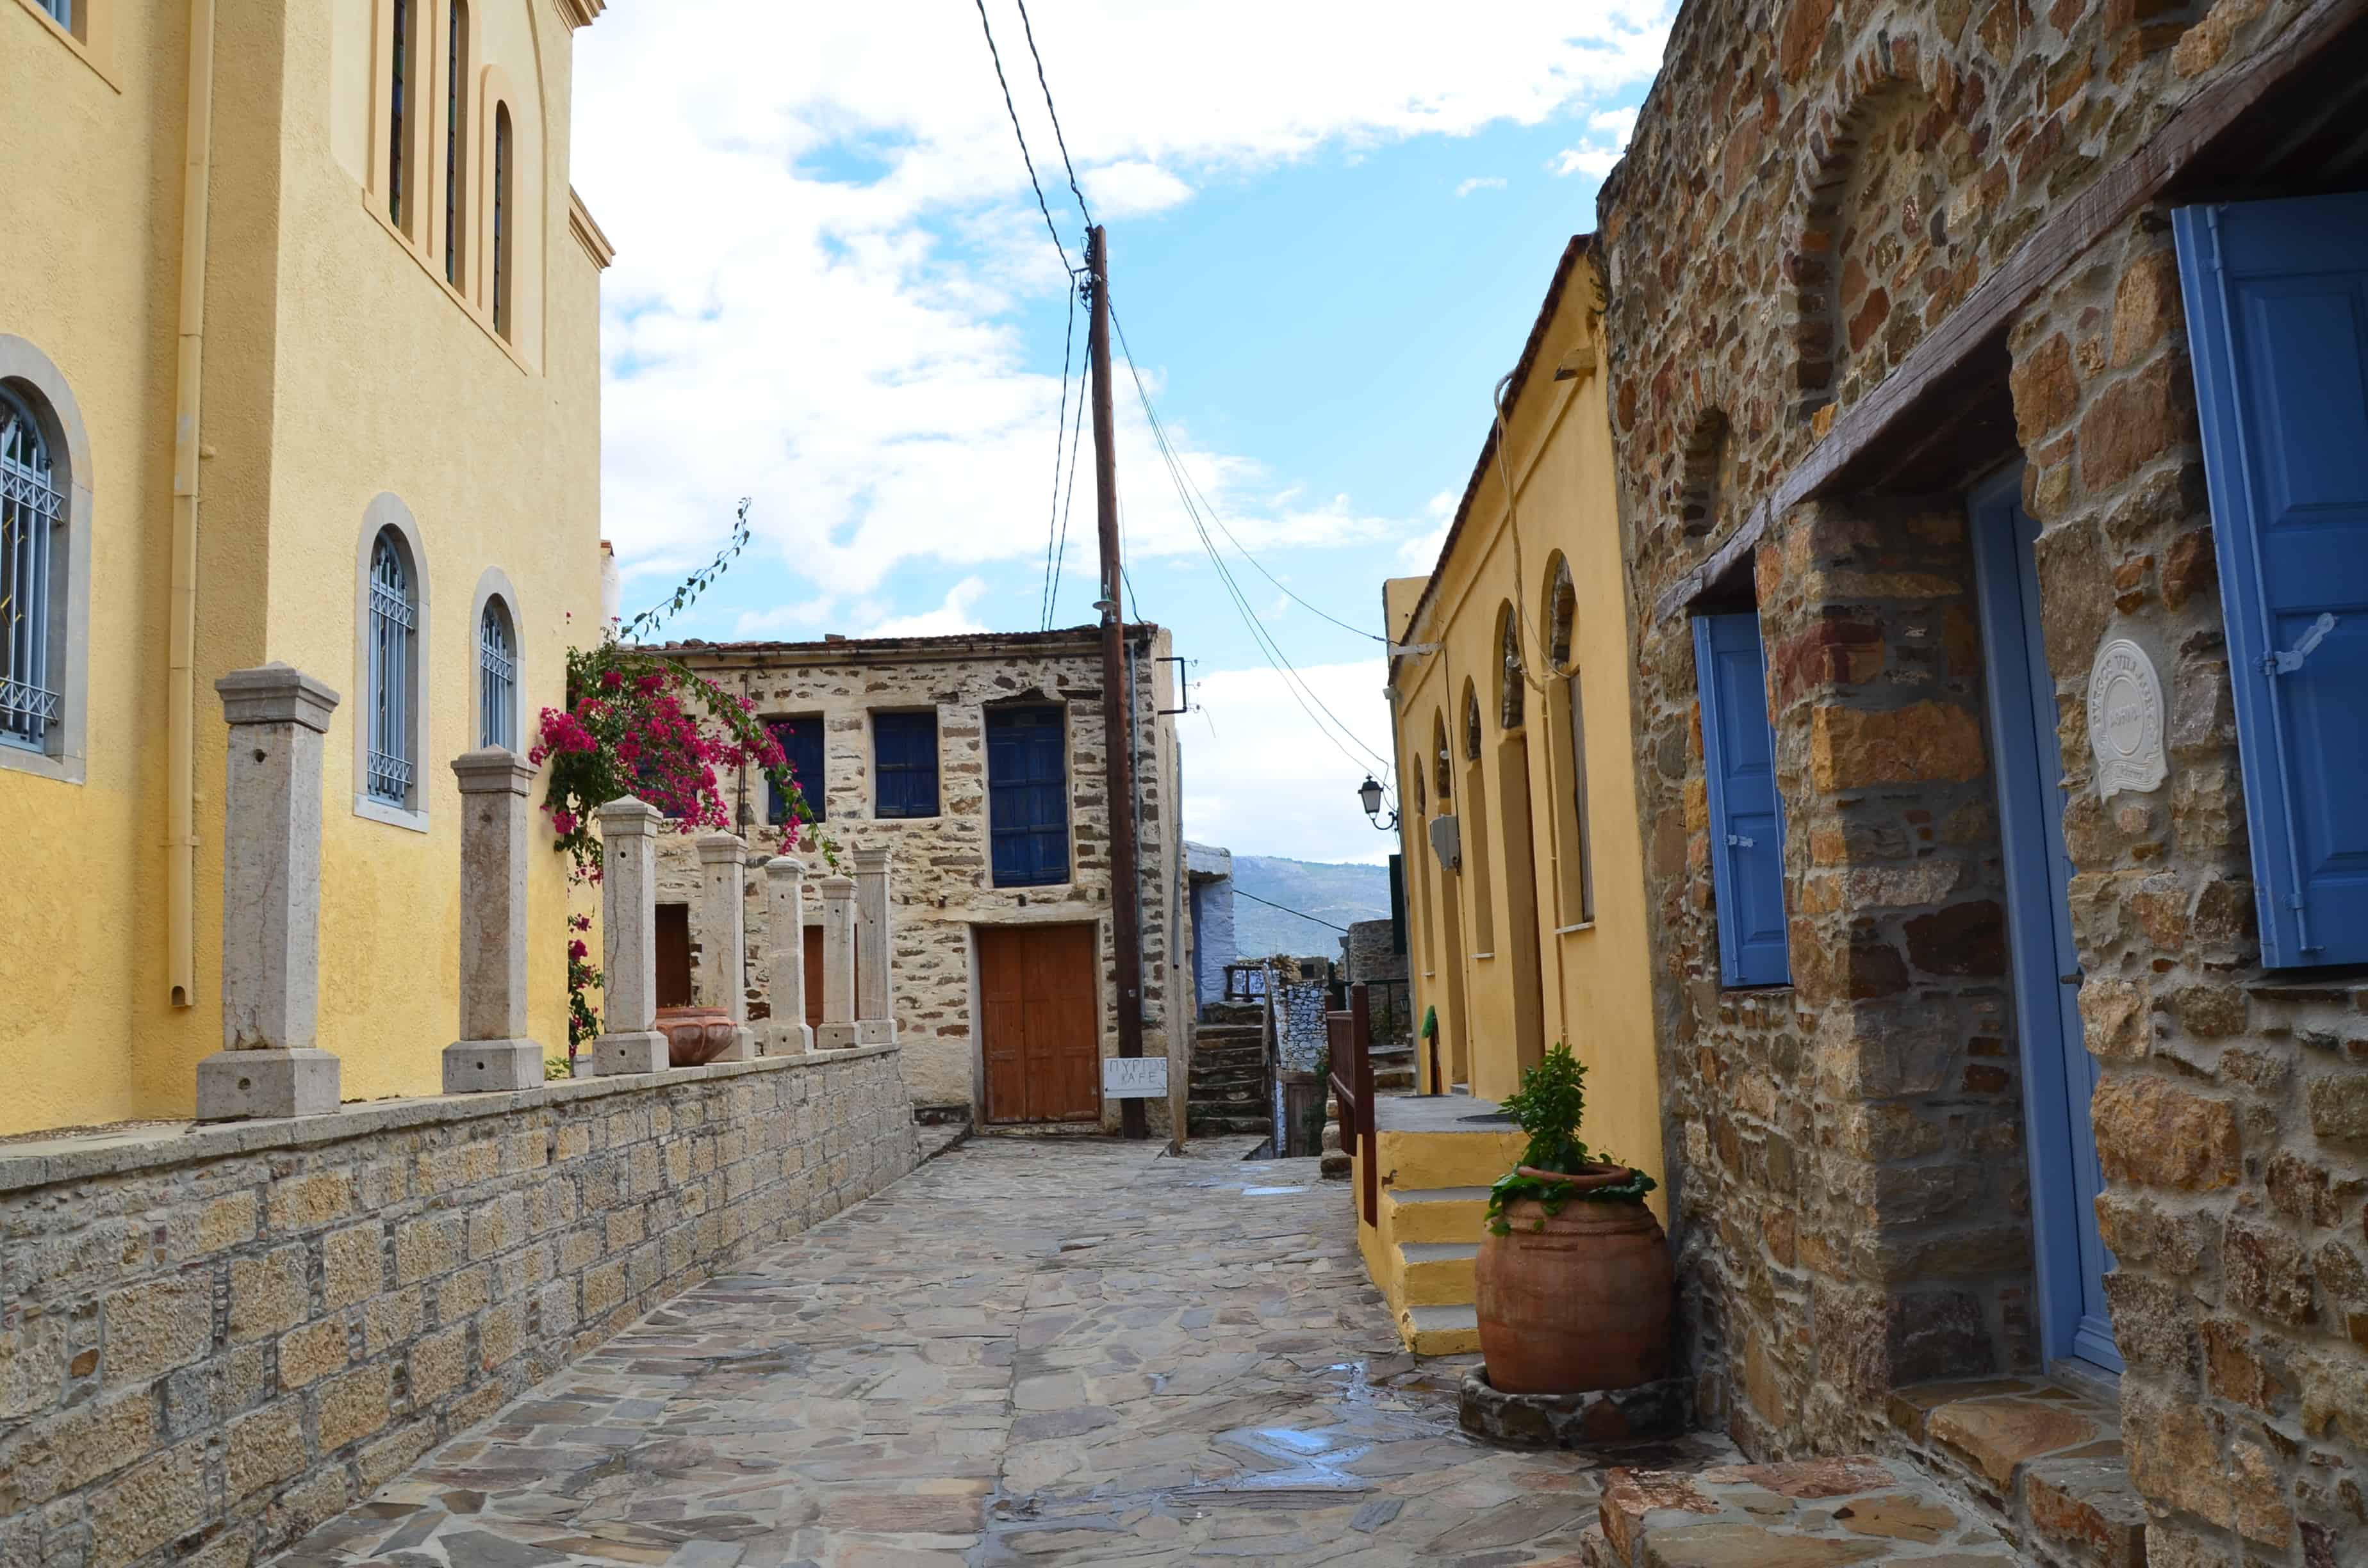 A path near the church in Volissos, Chios, Greece